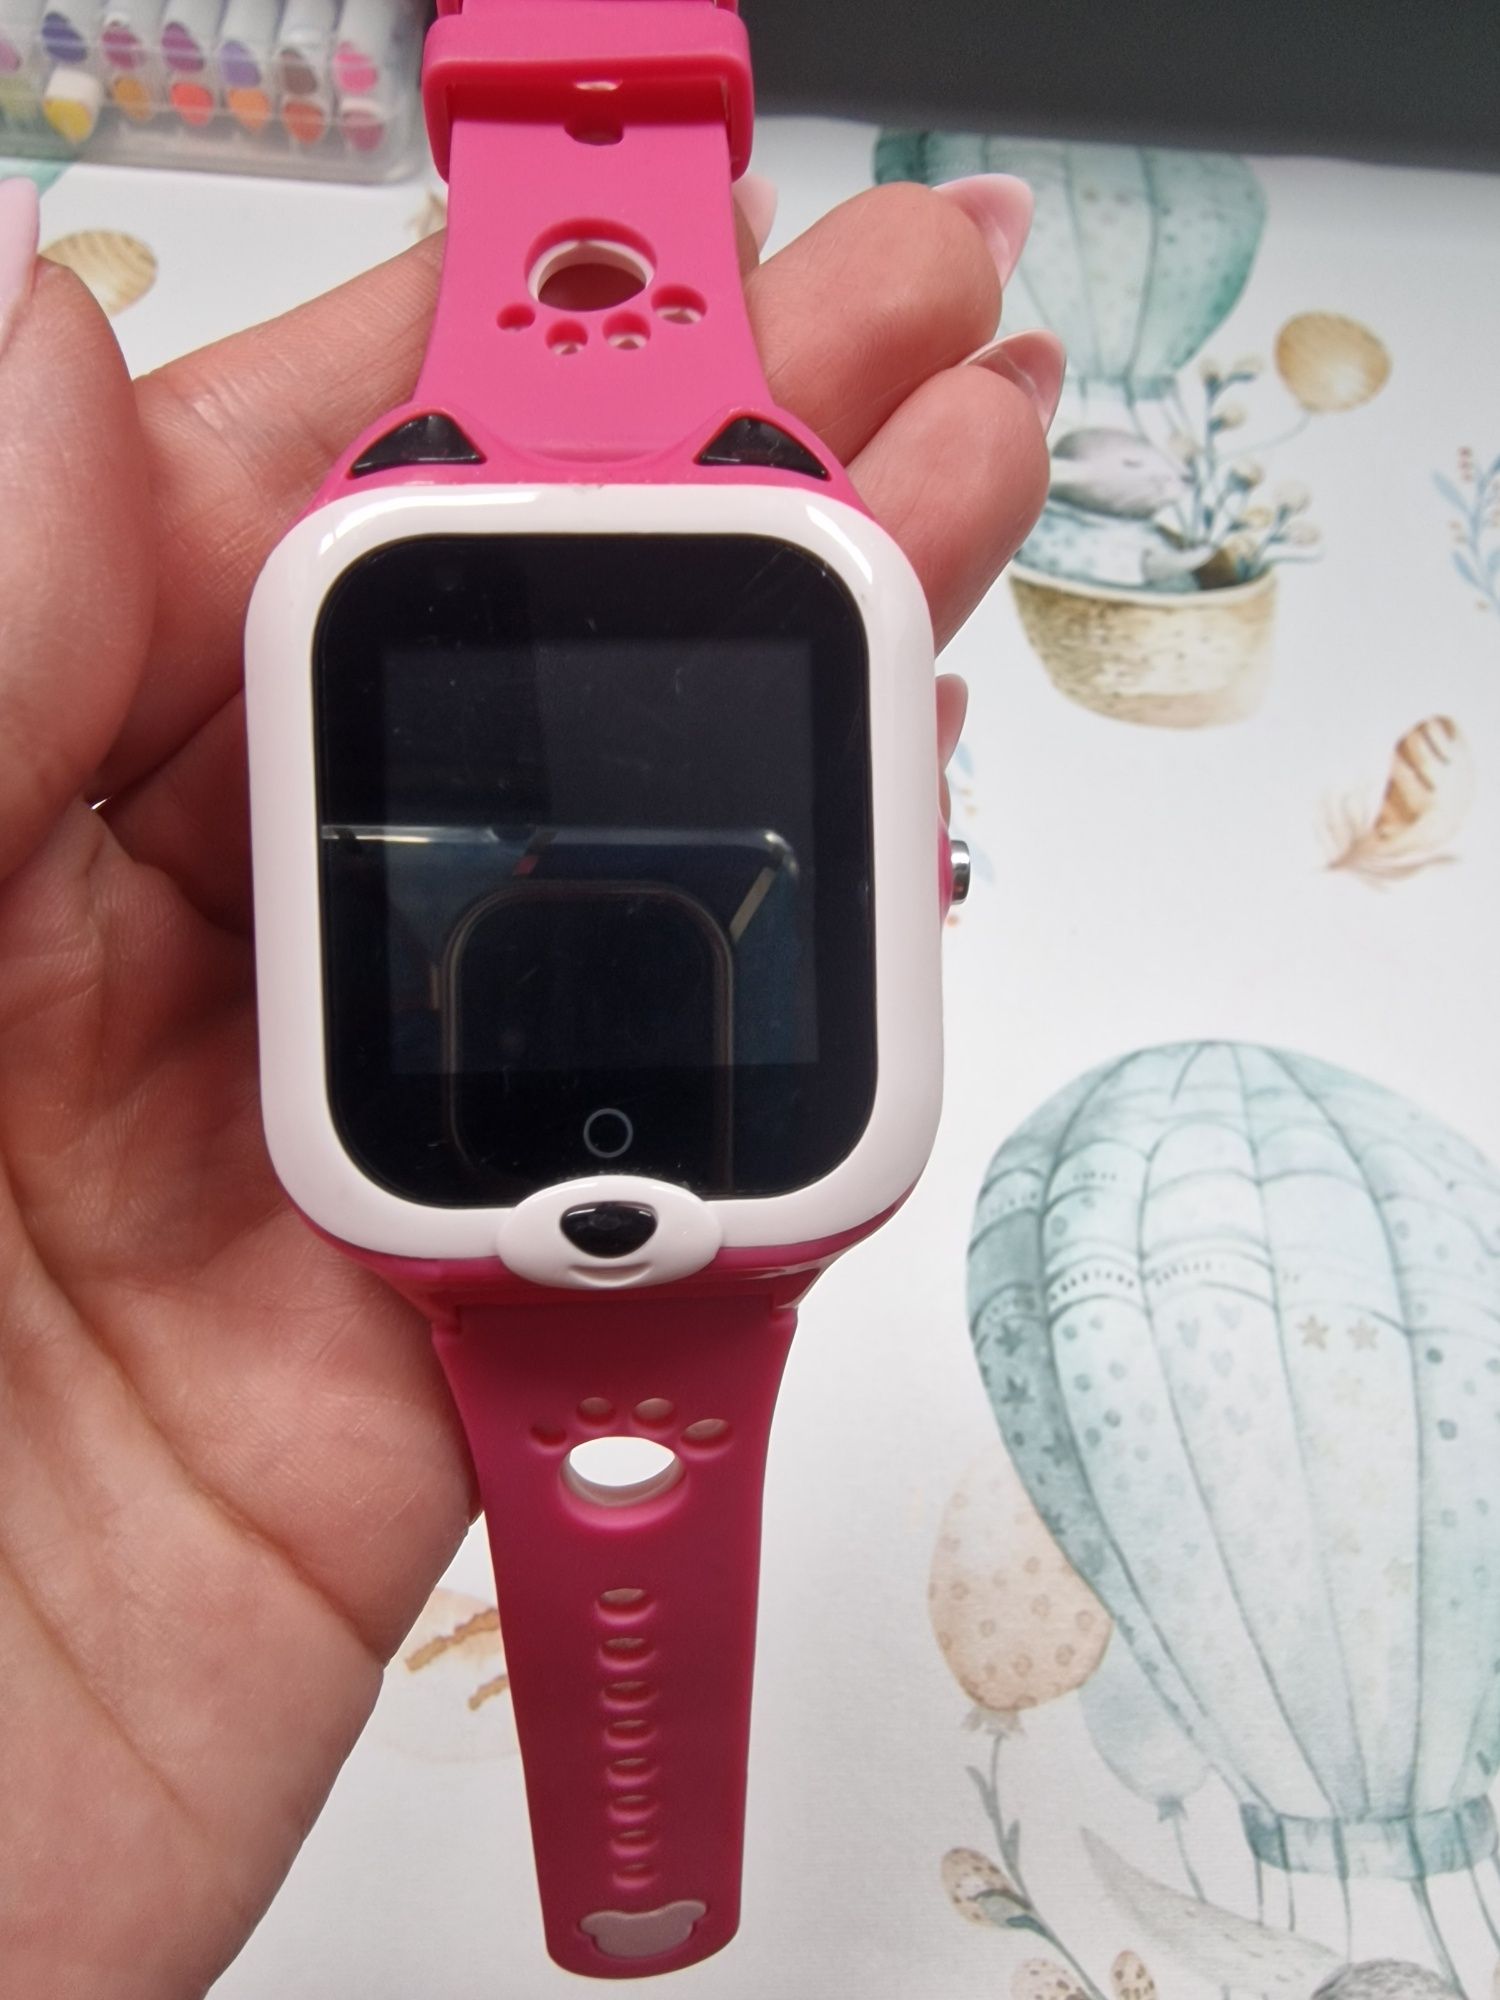 Smartwatch dla dzieci - Garret kids funky 4g